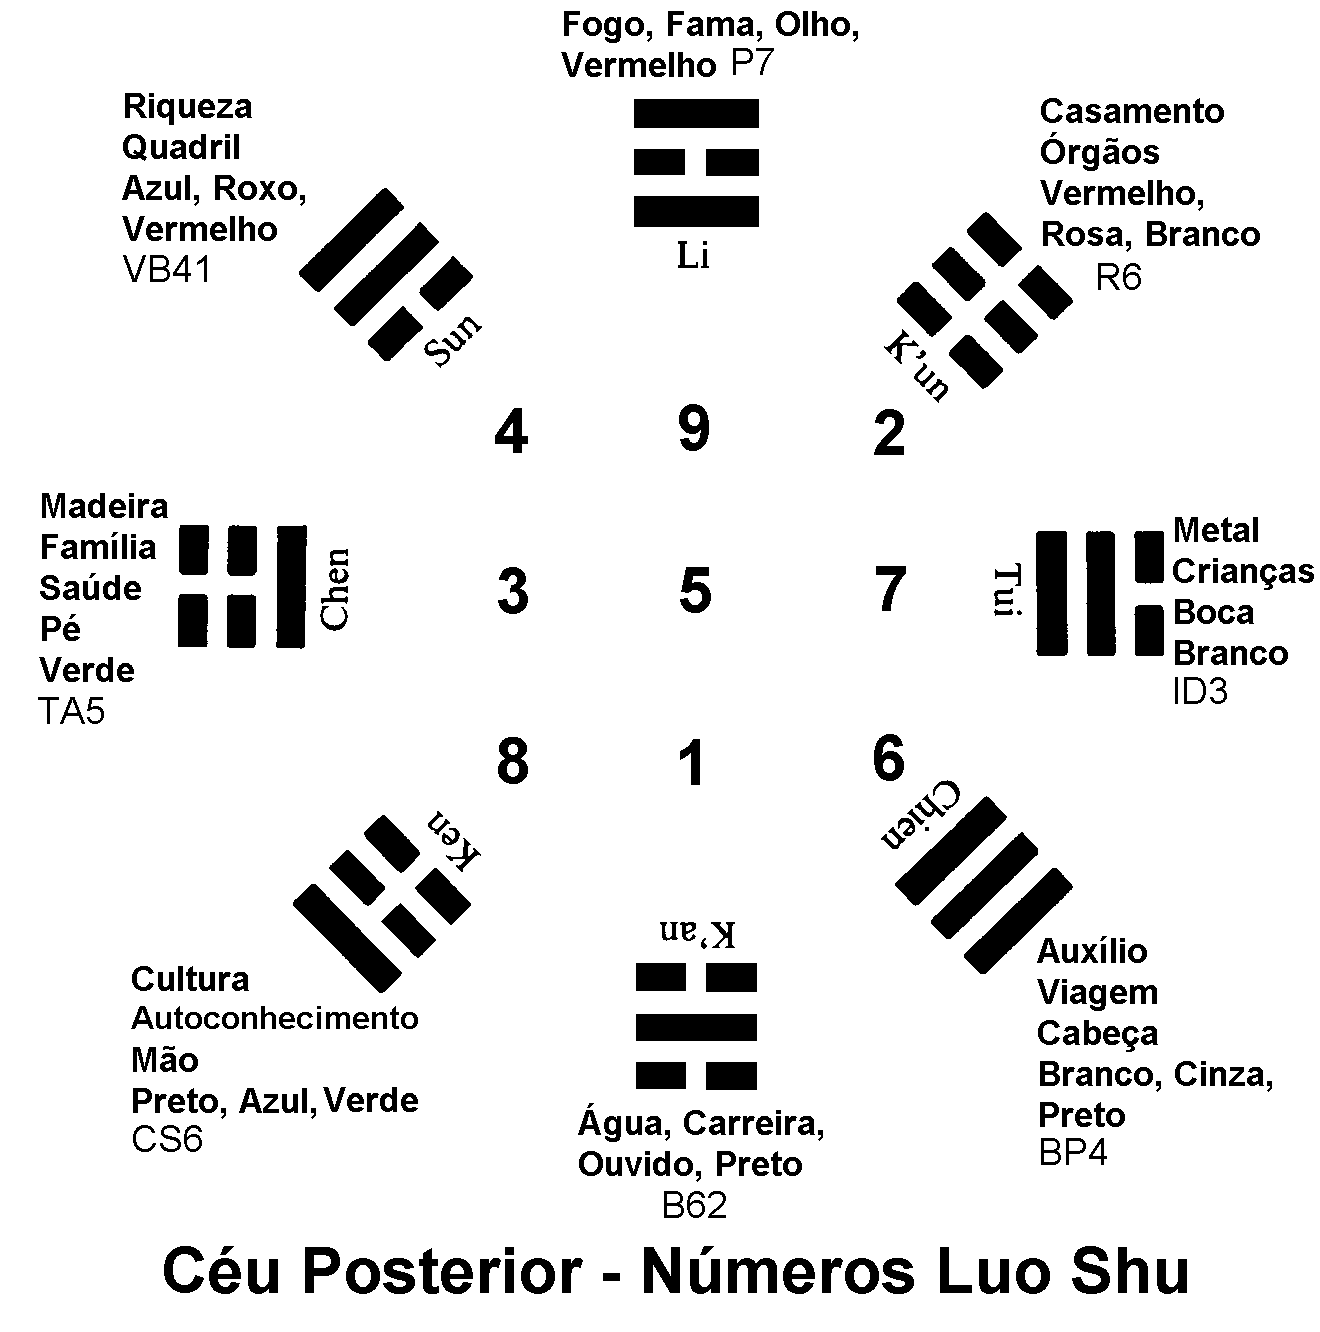 Trigramas na posição de Céu Posterior com números de Luo Shu e relações de Feng Shui